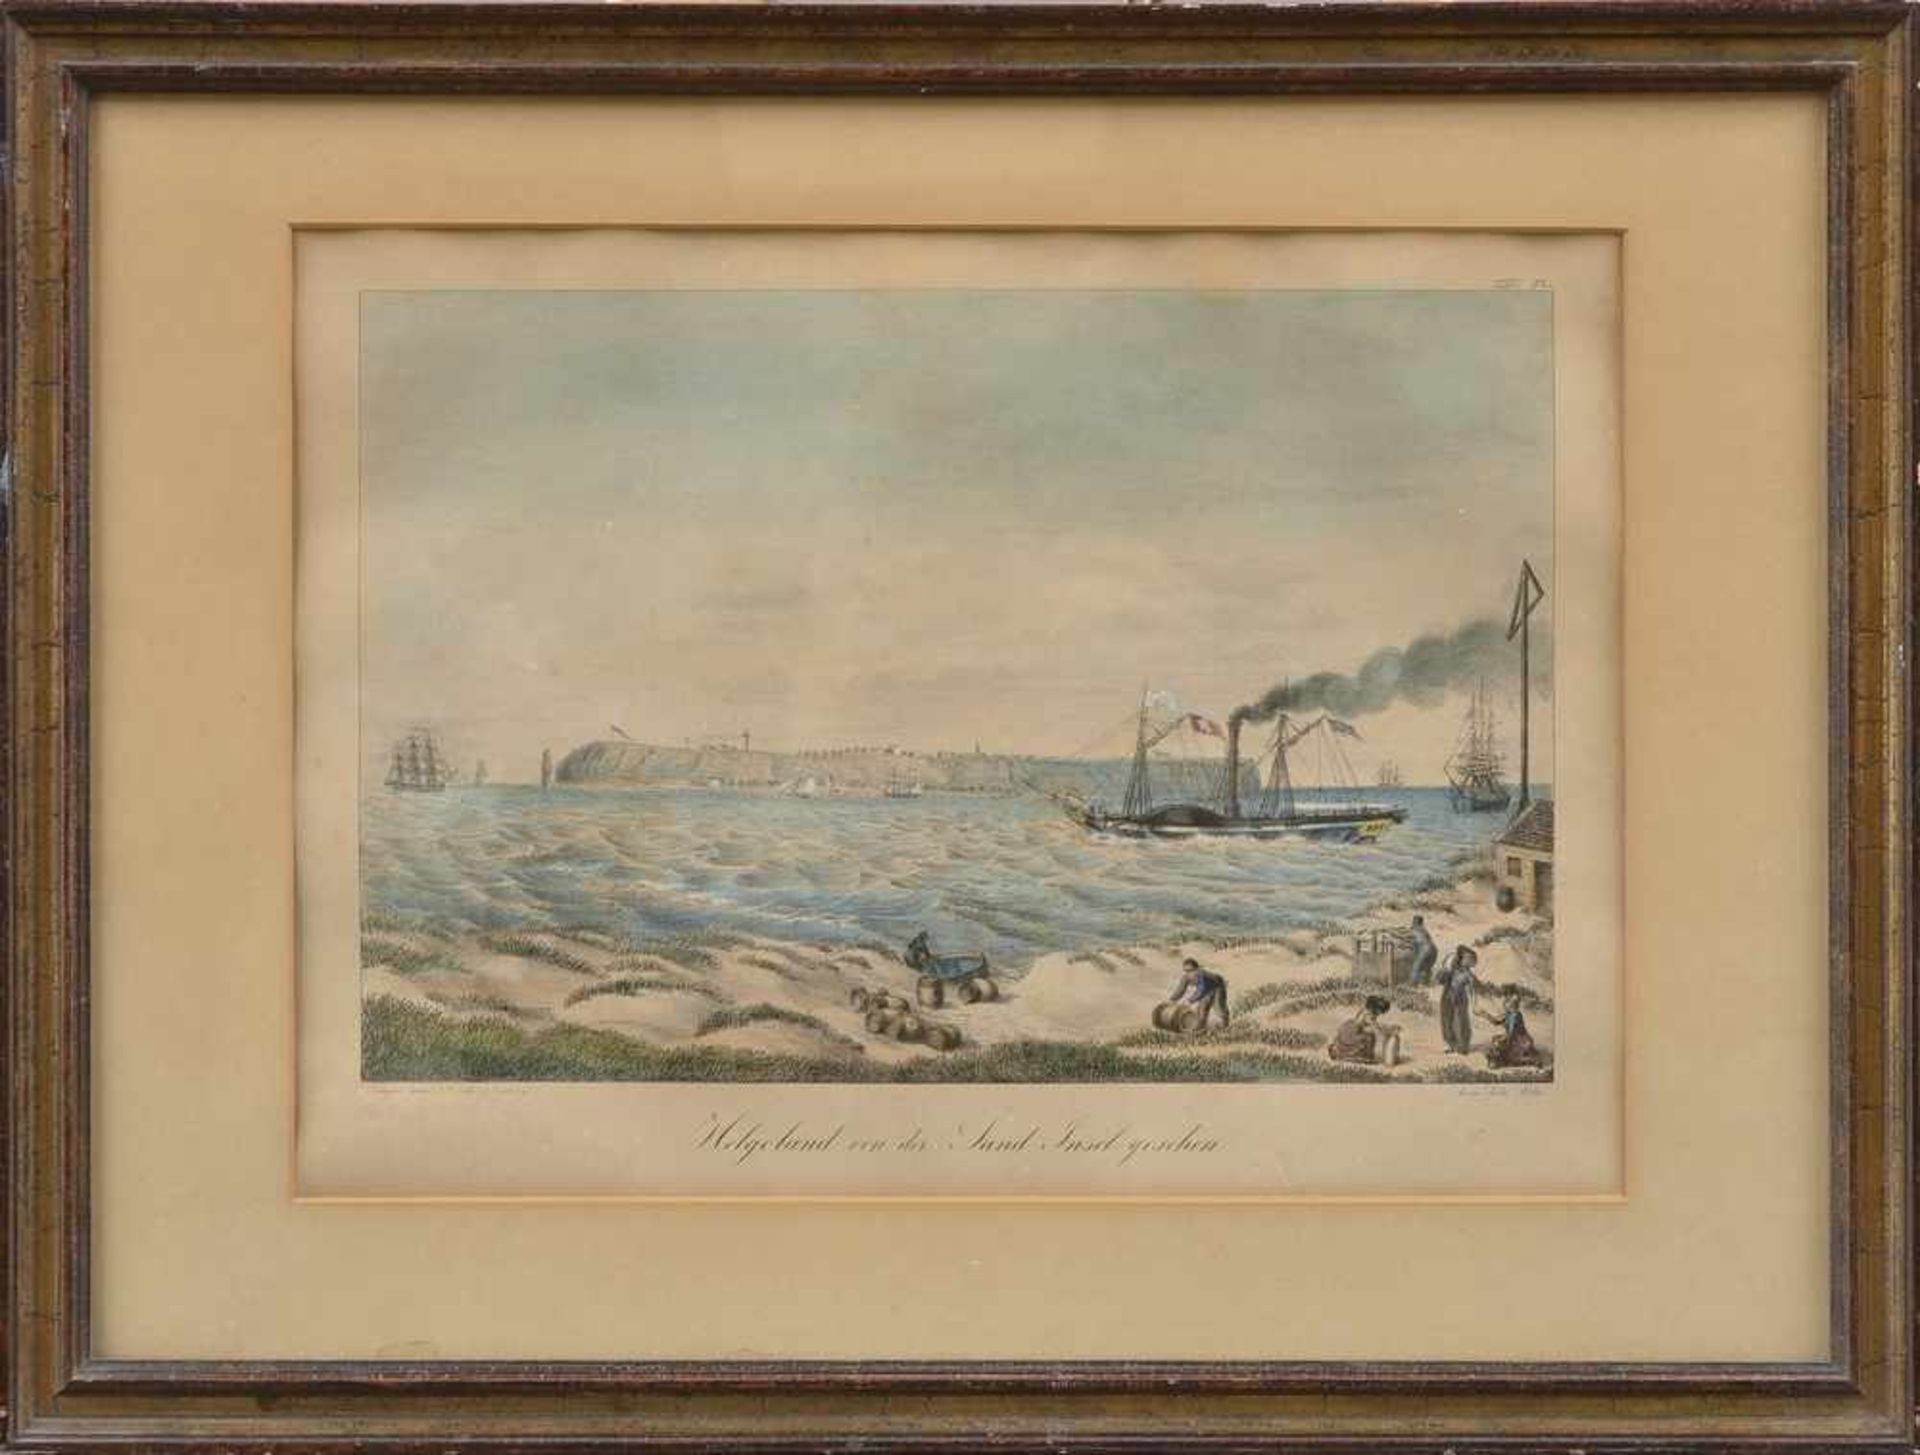 Suhr, Peter (1788-1857) "Helgoland von der Sand Insel gesehen", um 1827/30, colorierte Lithographie, - Bild 2 aus 2